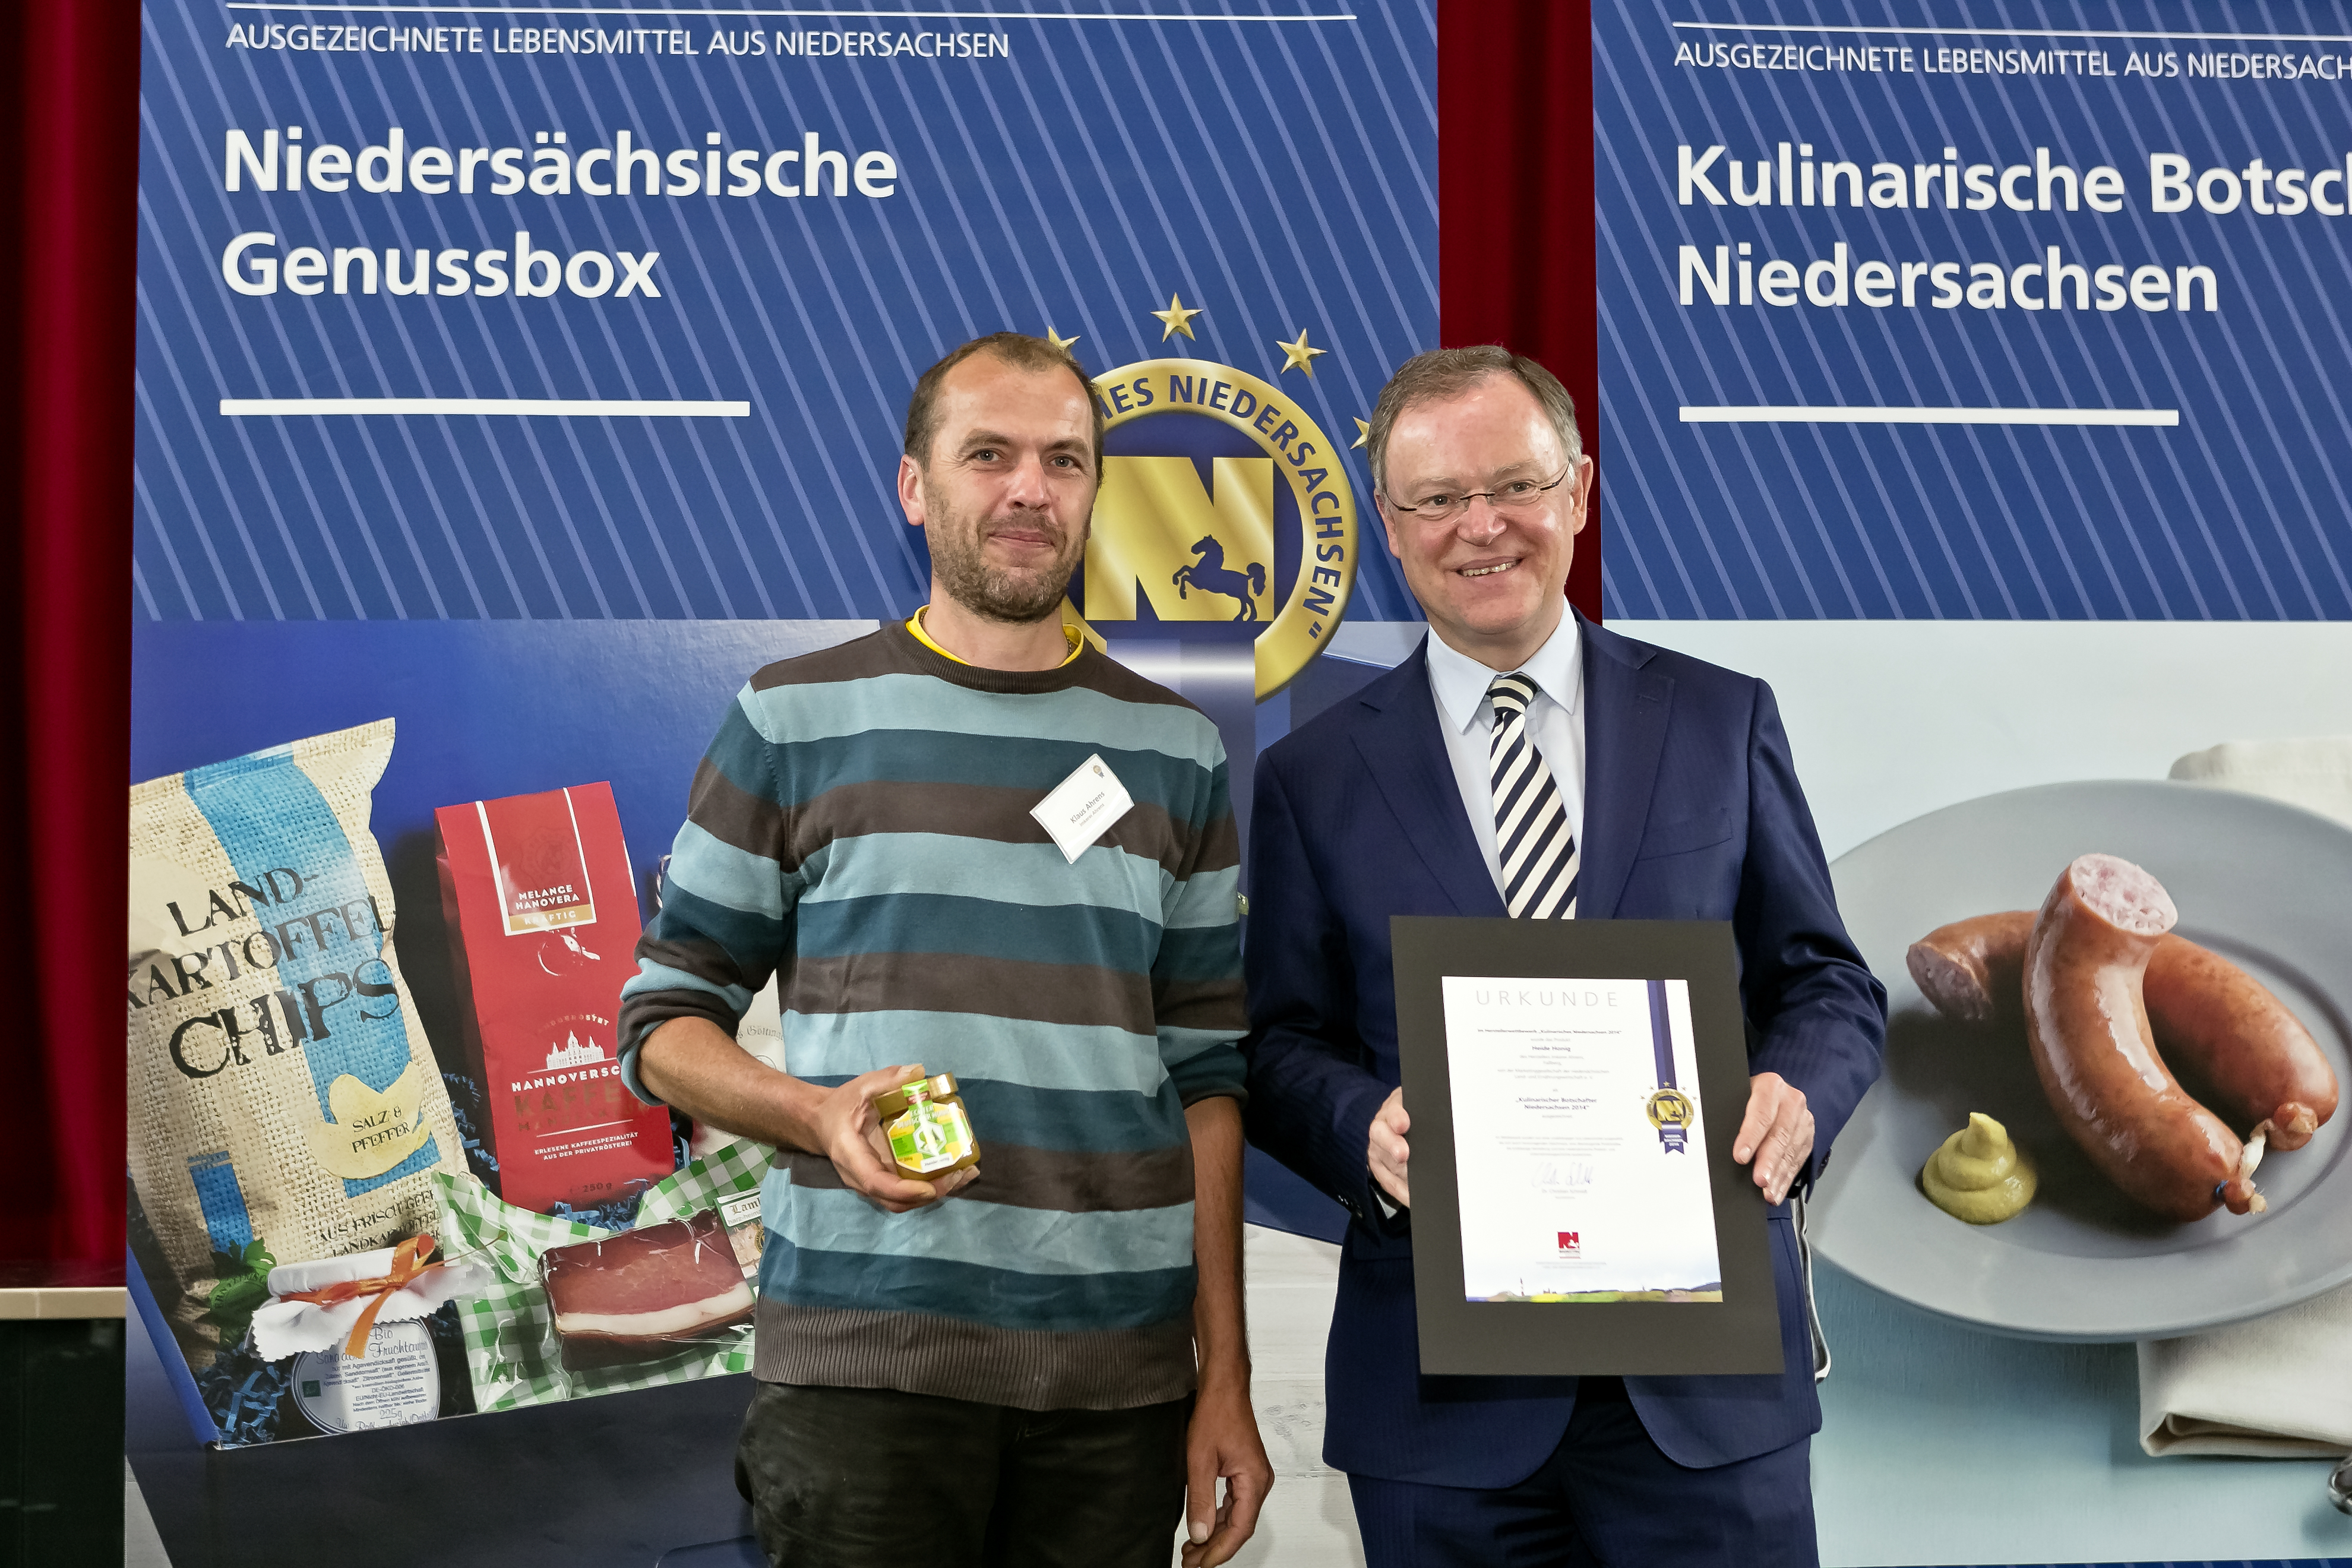 Heidehonig der Imkerei ausgezeichnet als Kulinarischer Botschafter aus Niedersachsen
http://www.imkerei-ahrens.de/